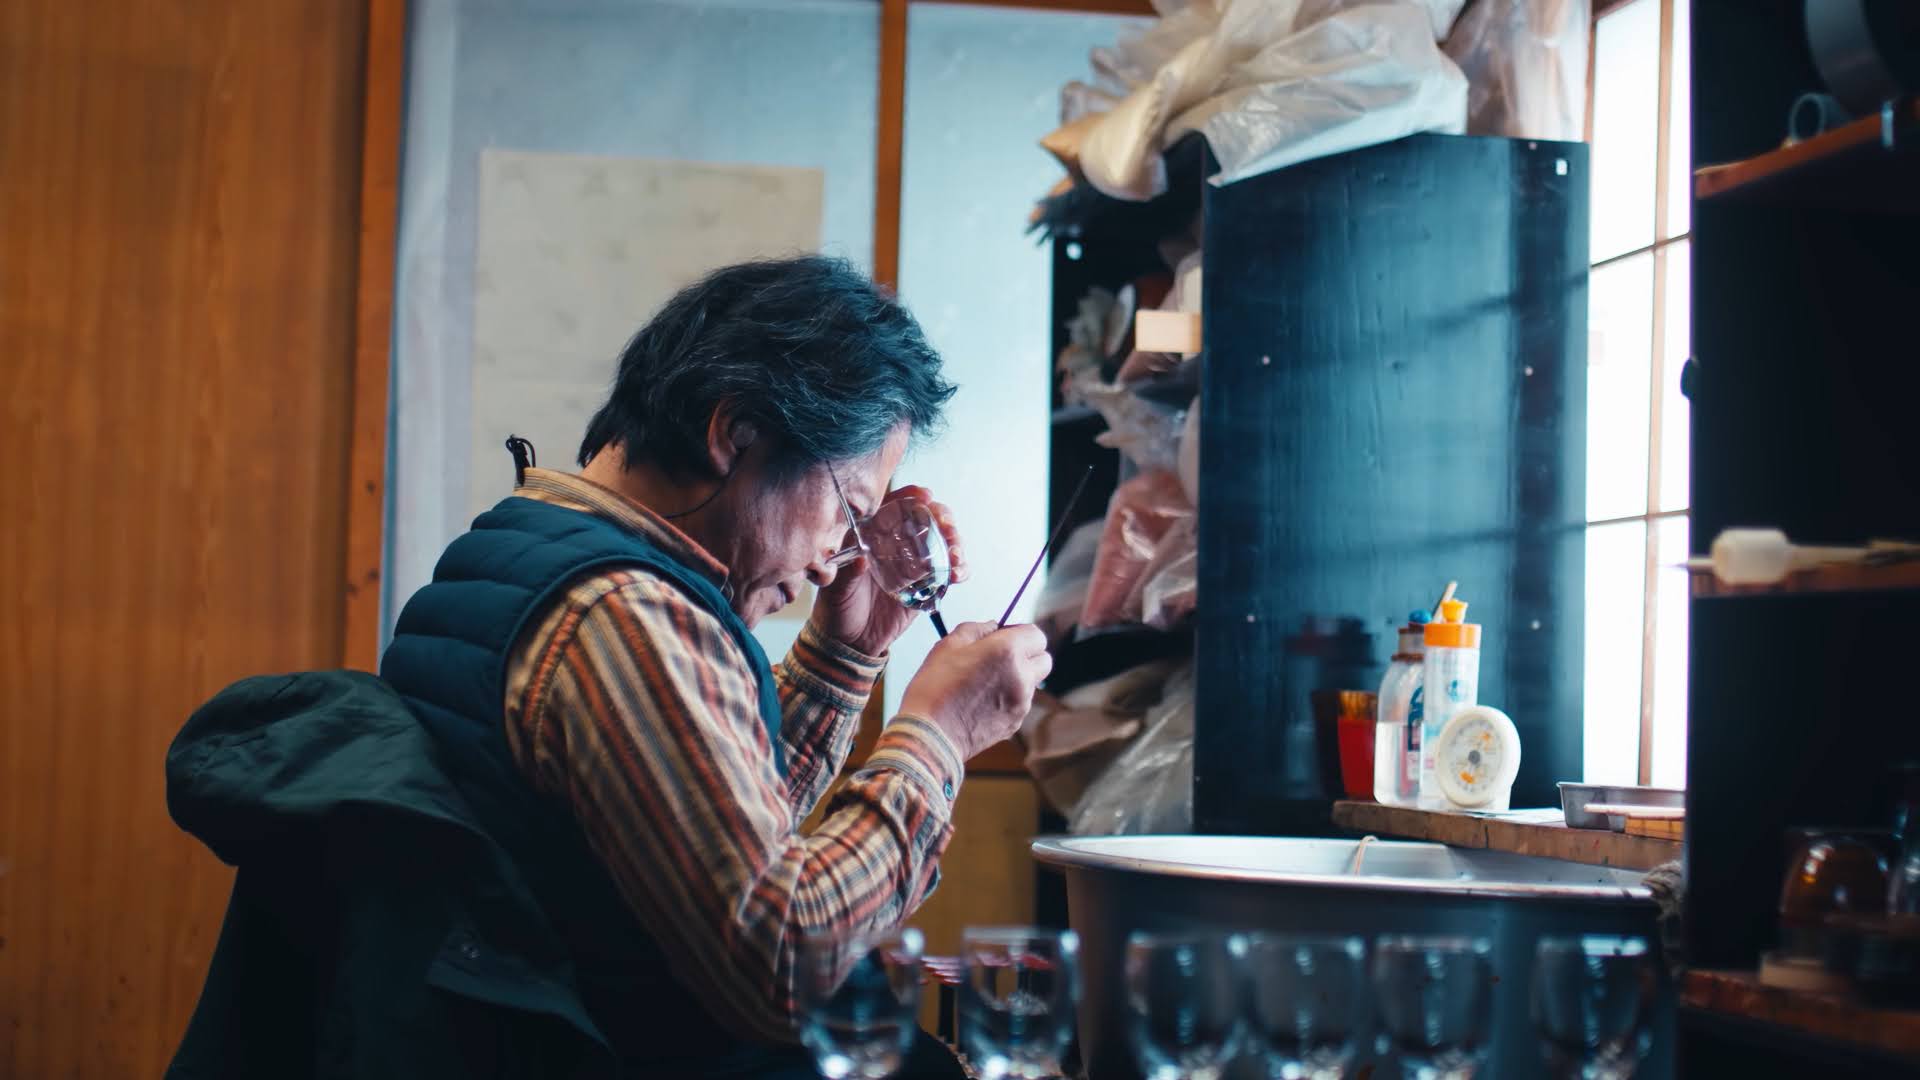 A man making traditional Nagano lacquerware